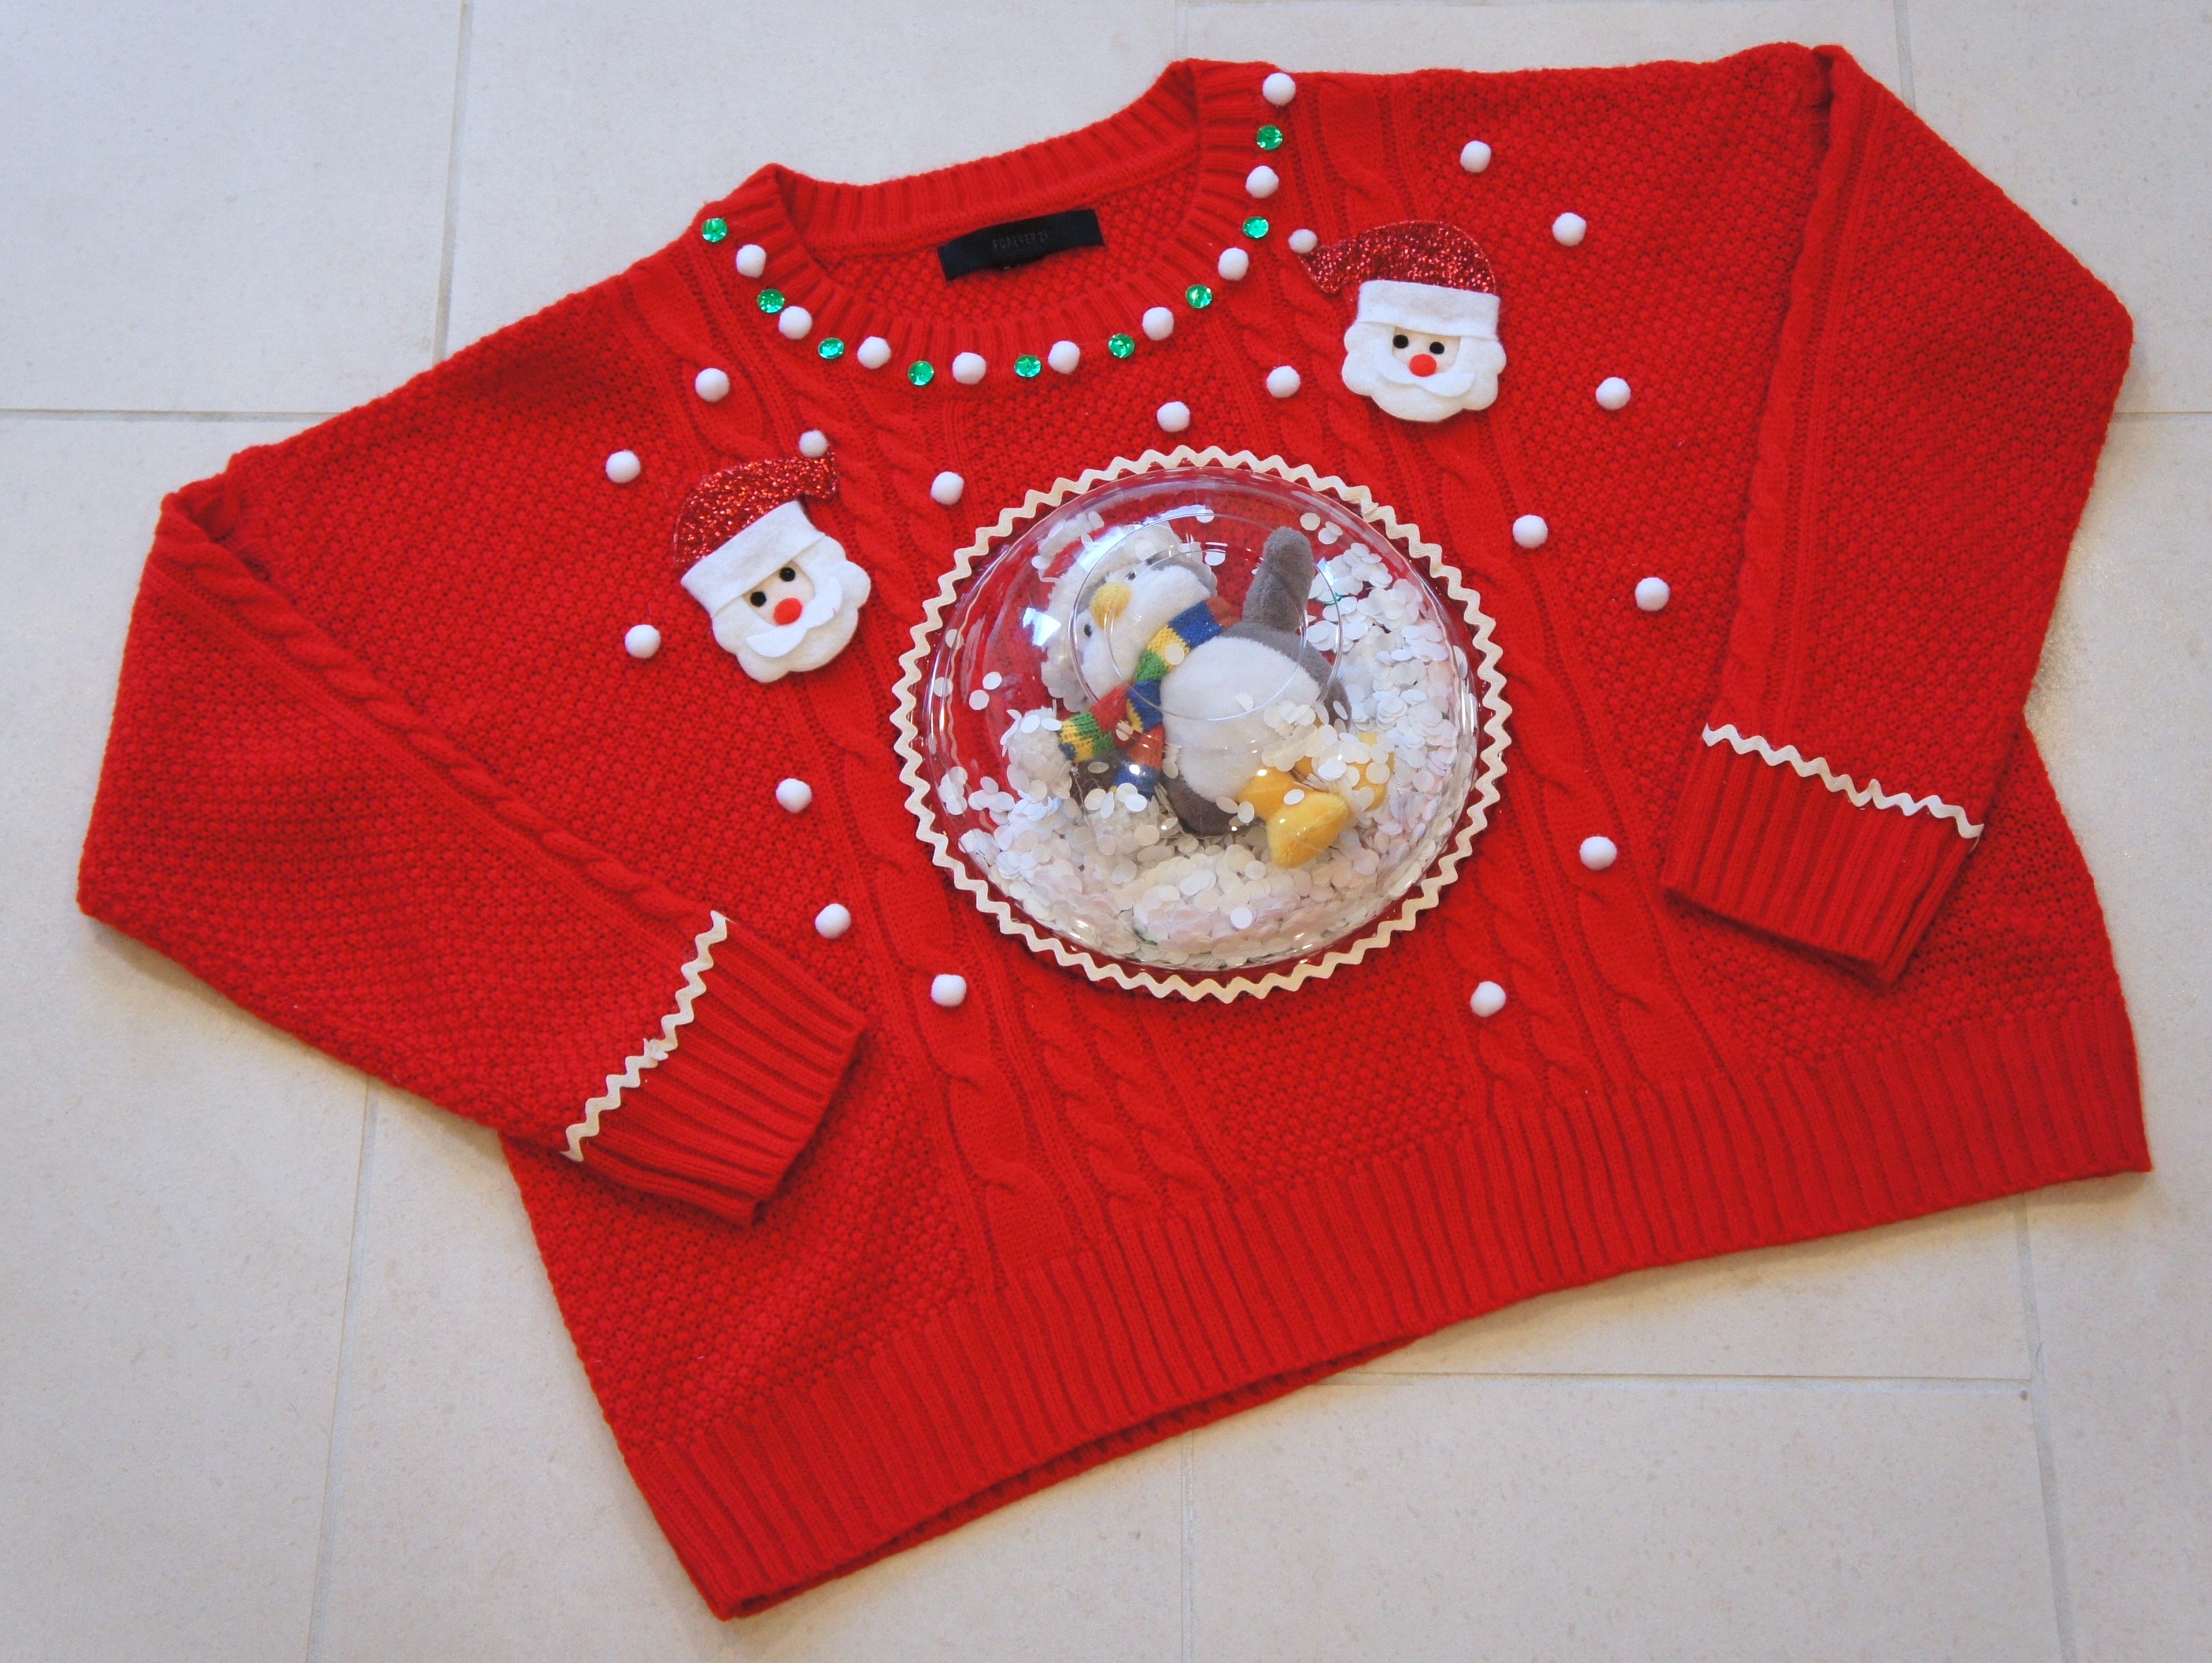 DIY Ugly Christmas Sweater